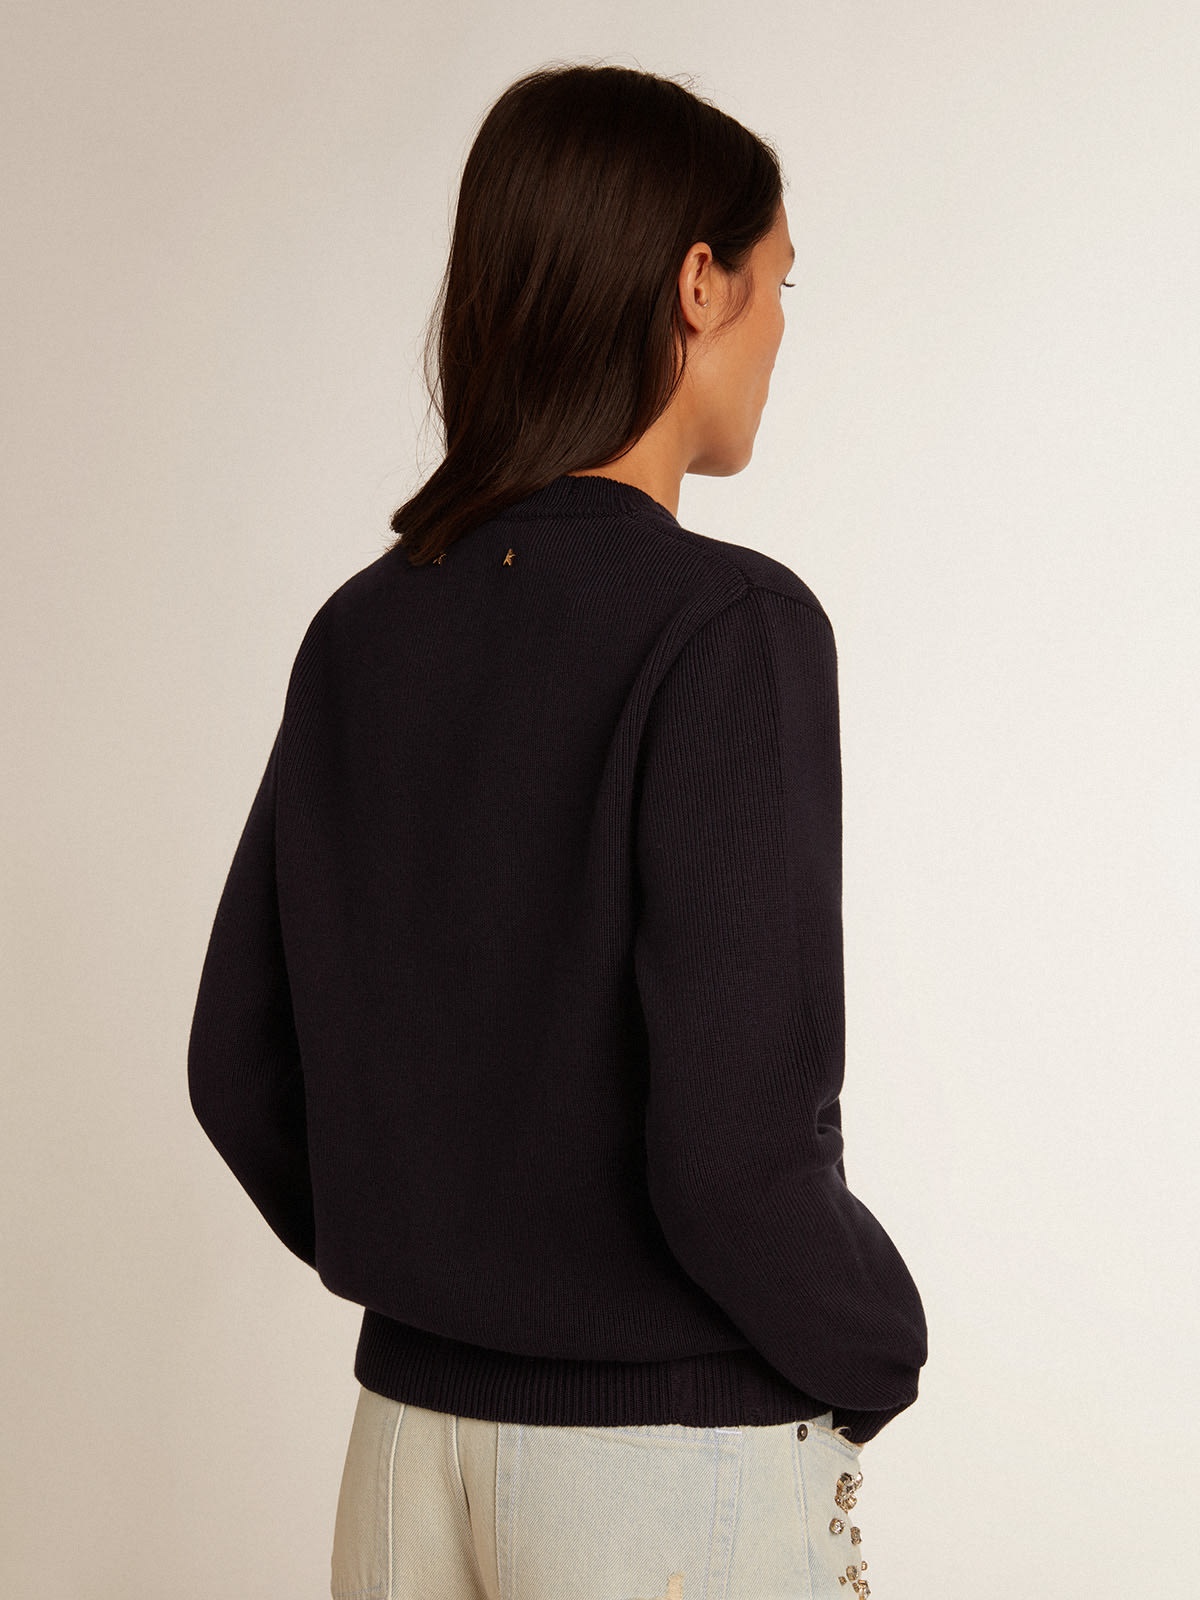 Women’s round-neck sweater in dark blue cotton - 4